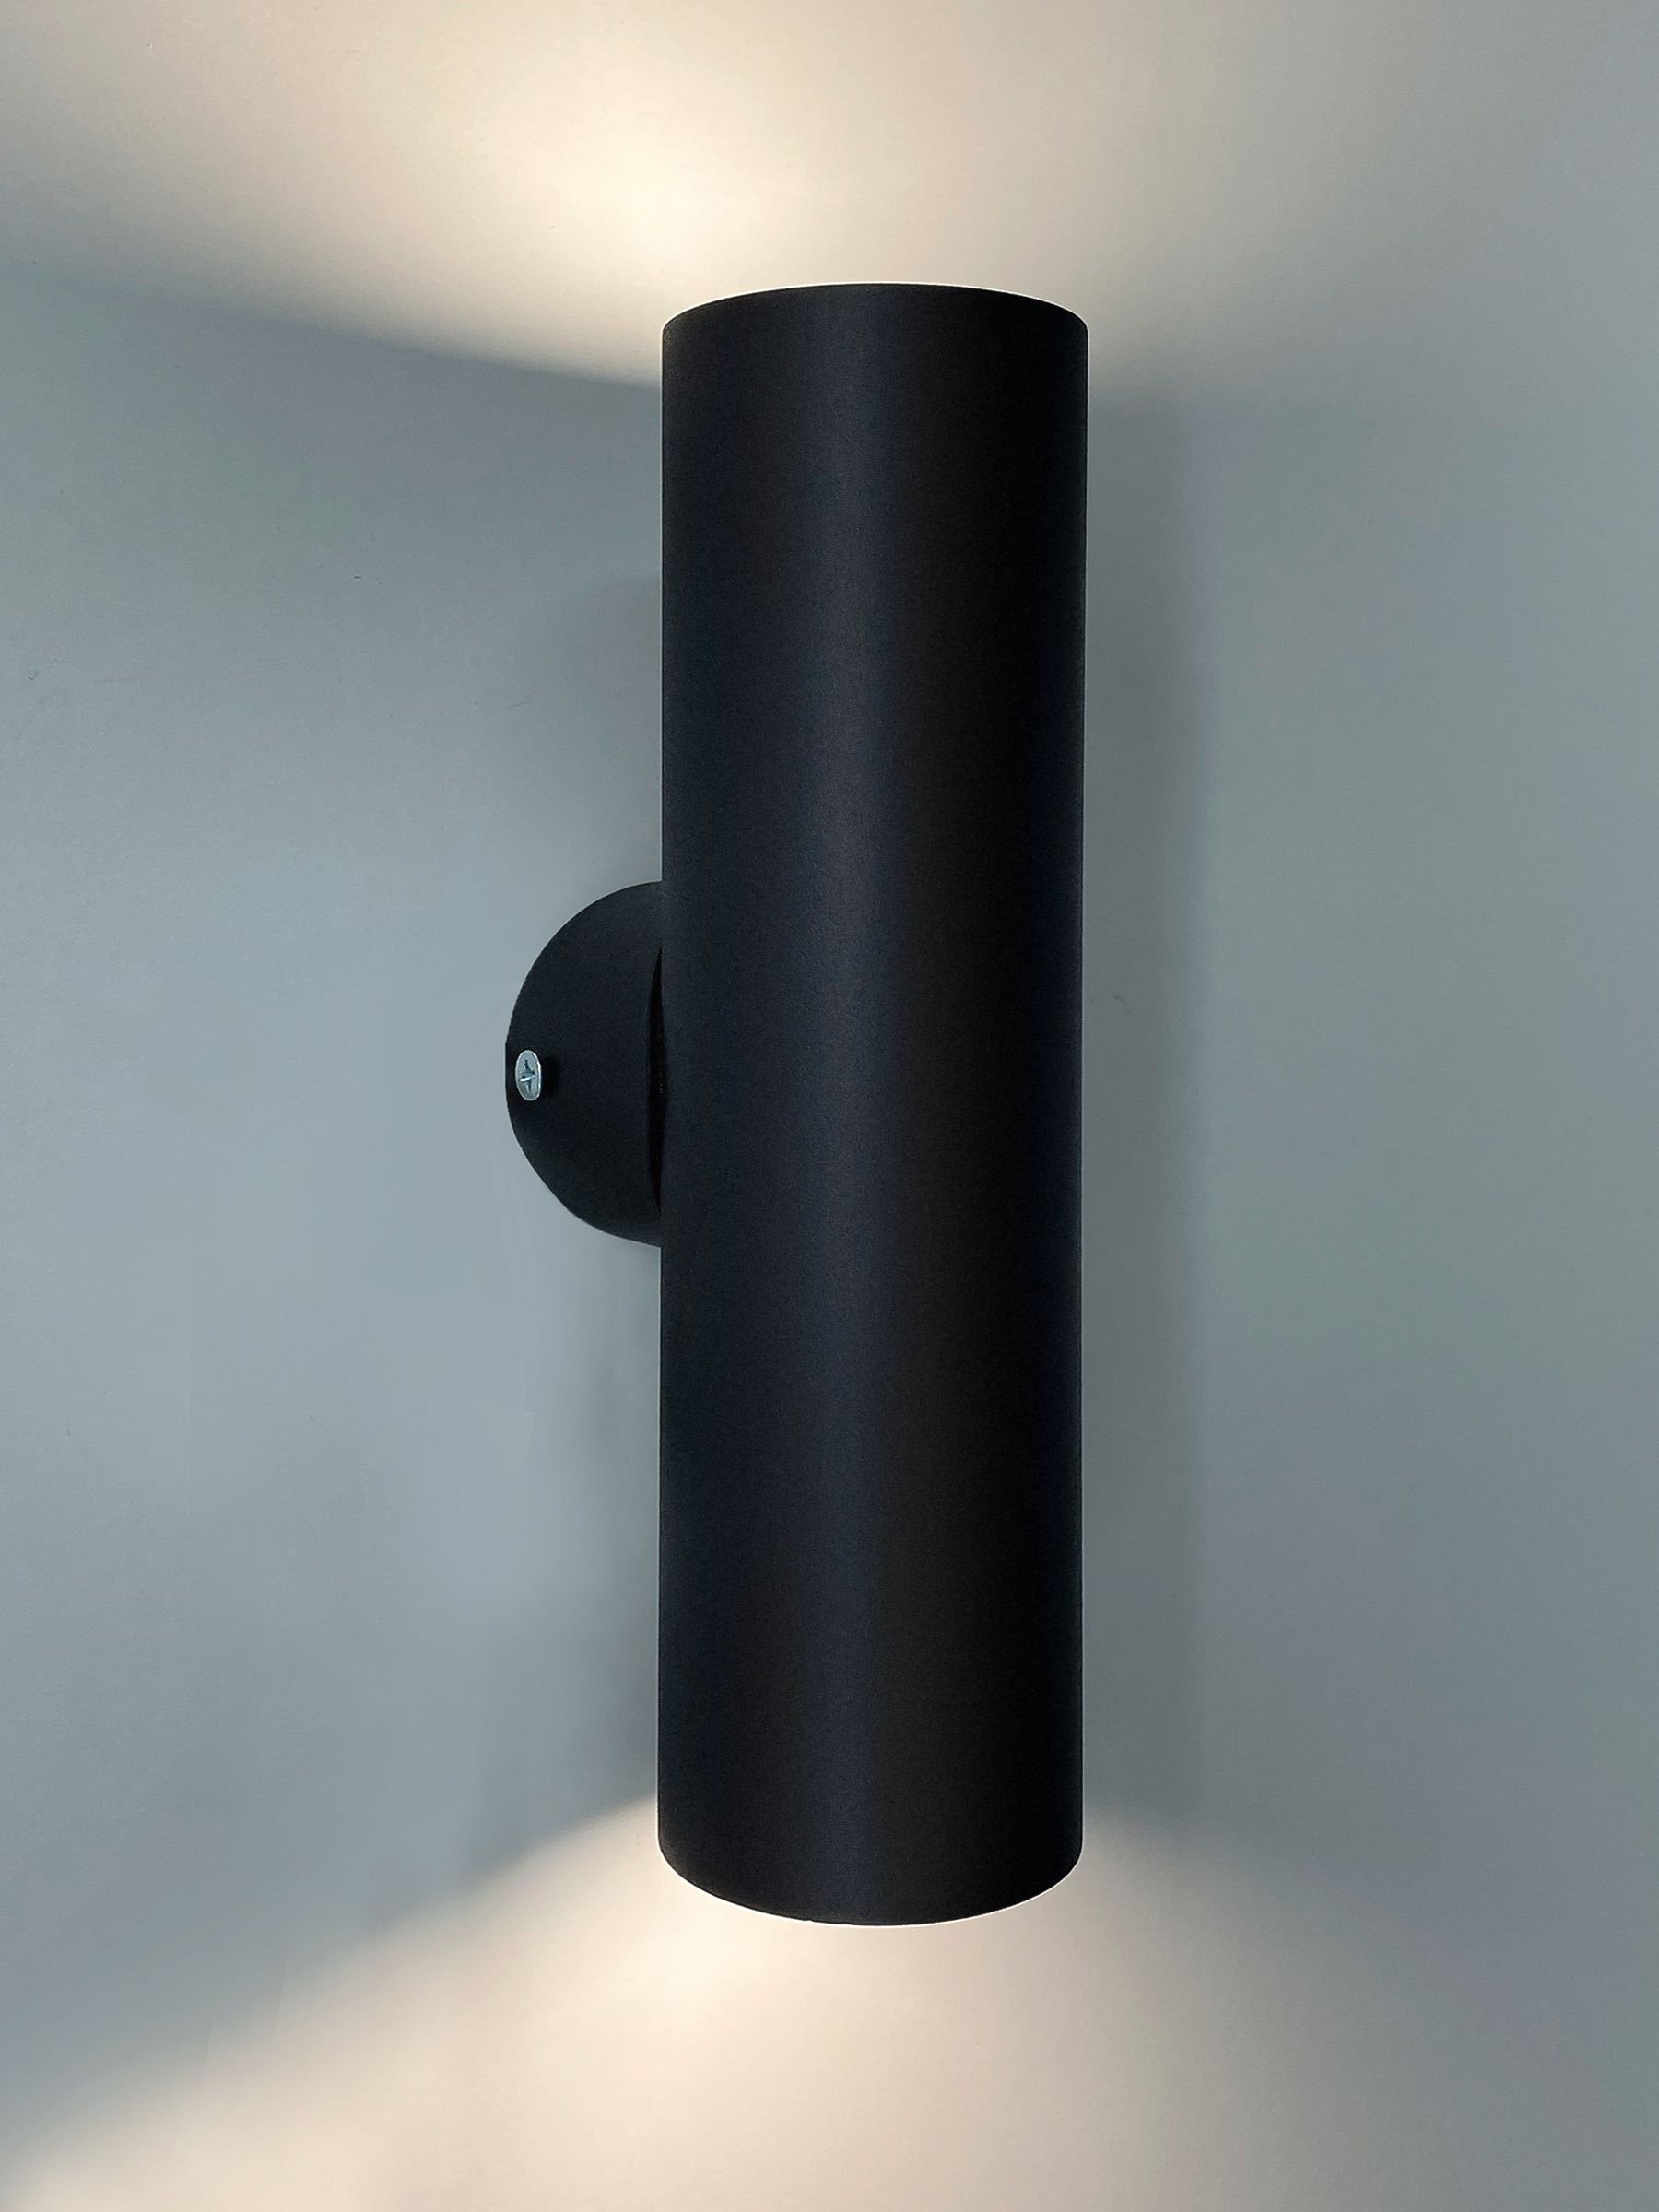 Интерьерный настенный точечный светильник Комлед INTERIOR TWIN R S, черный